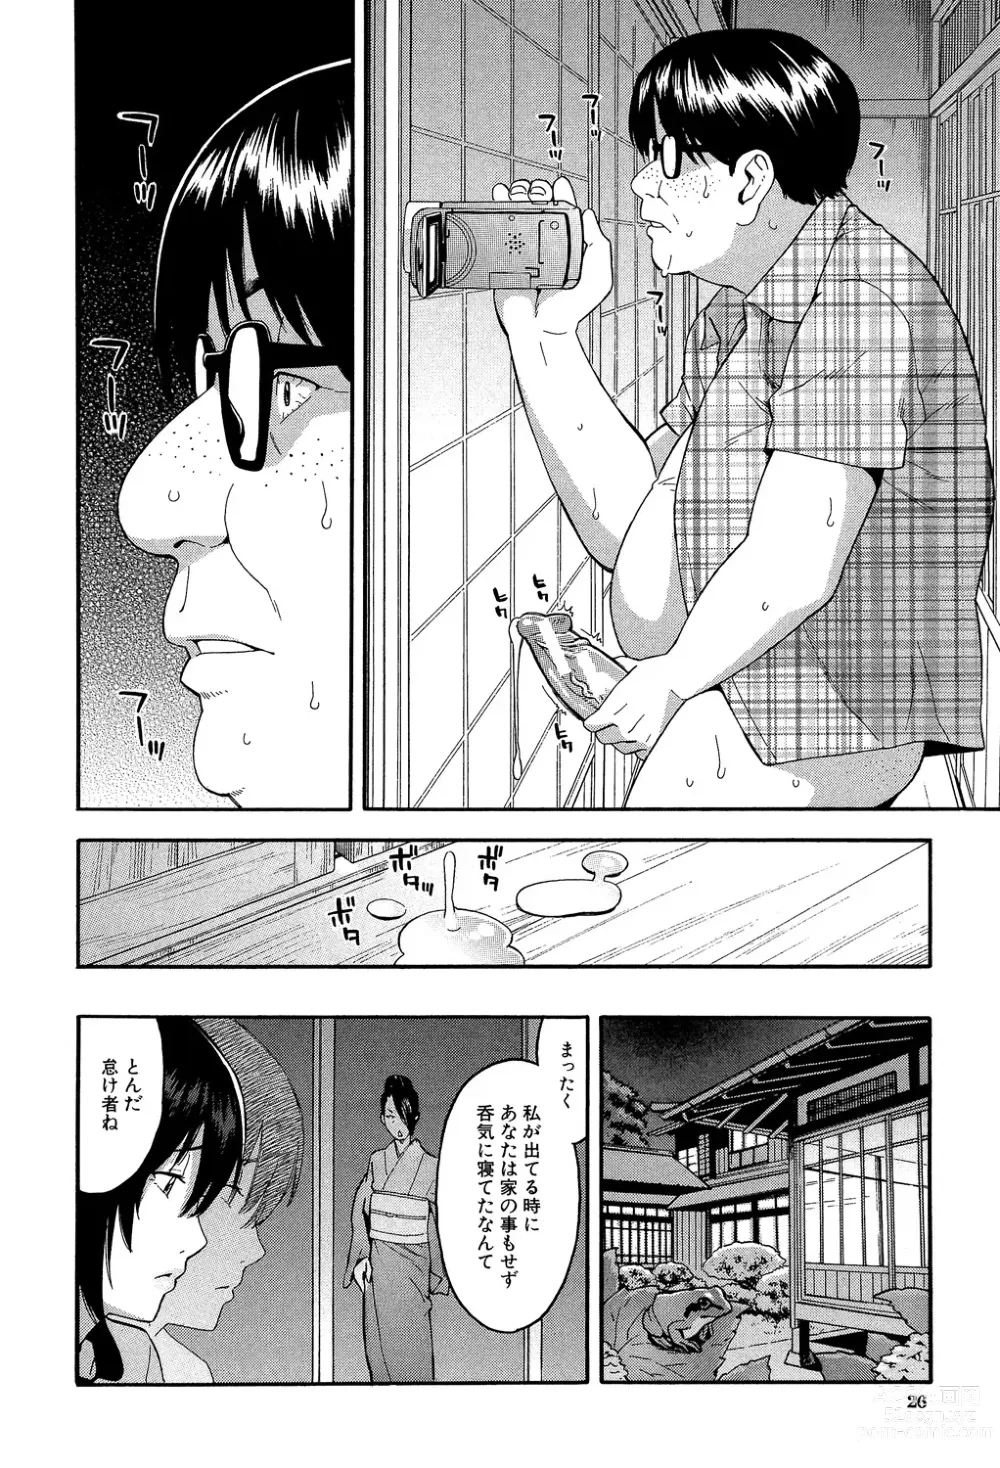 Page 26 of manga Hitozuma x Netorare